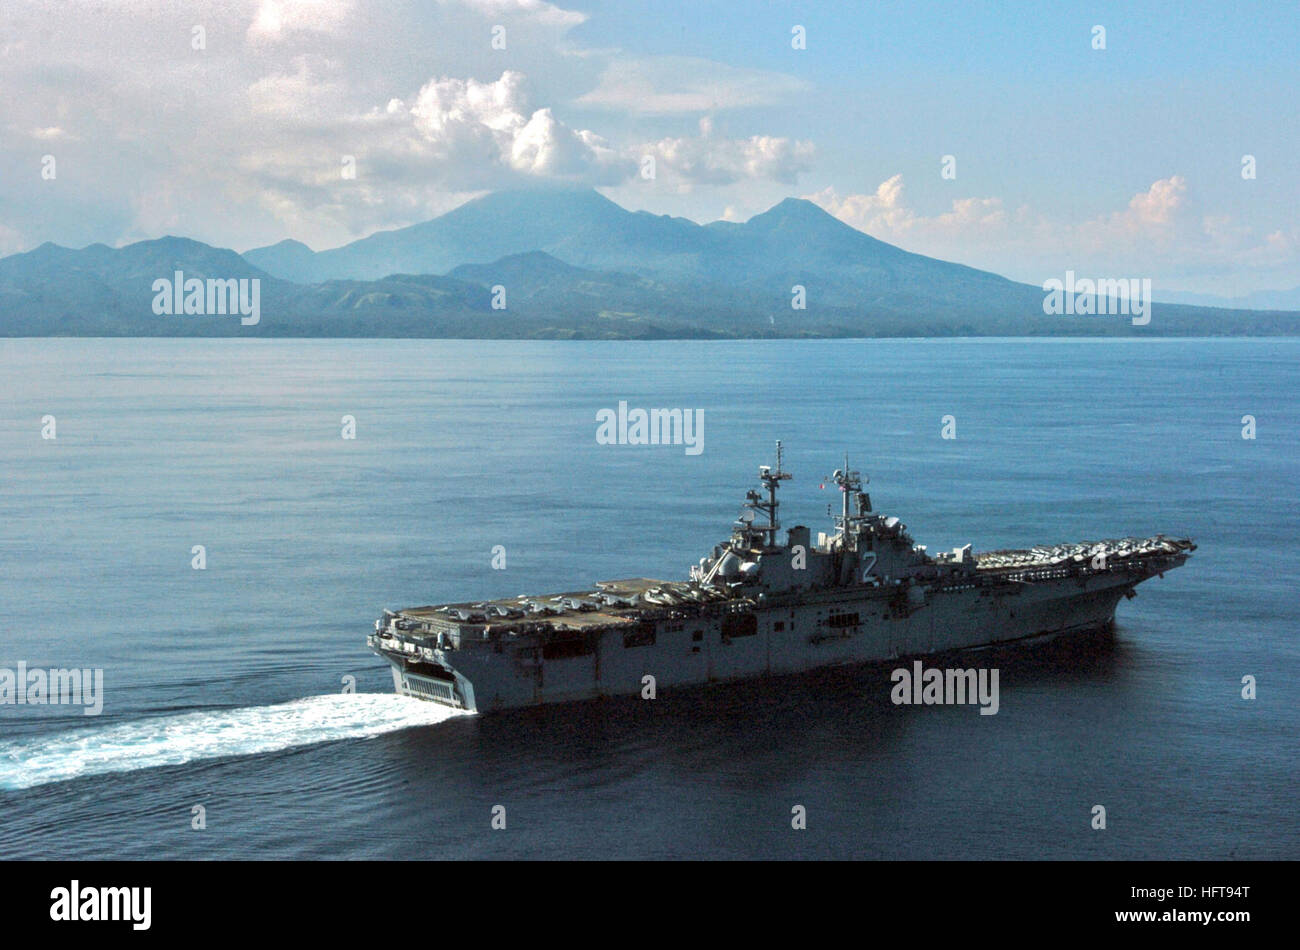 061104-N-5067K-143 Océano Pacífico (Nov. 4, 2006) - El USS Essex (LHD 2) pasa de Mt. Bulusan un volcán ubicado en el extremo sur de la isla de Luzón, que transita por el Estrecho de San Bernardino, después de completar una visita al puerto de Subic Bay, Filipinas. Essex y 31 MEU fueron en Filipinas para participar en ejercicios bilaterales, Ejercicio Talon Vision y anfibio PHIBLEX ejercicio (07), con las Fuerzas Armadas de Filipinas (AFR). Navy photo by Mass Communication Specialist 1st Class Michael D. Kennedy (liberado) US Navy 061104-N-5067K-143 USS Essex (LHD 2) pasa de Mt. Bu Foto de stock